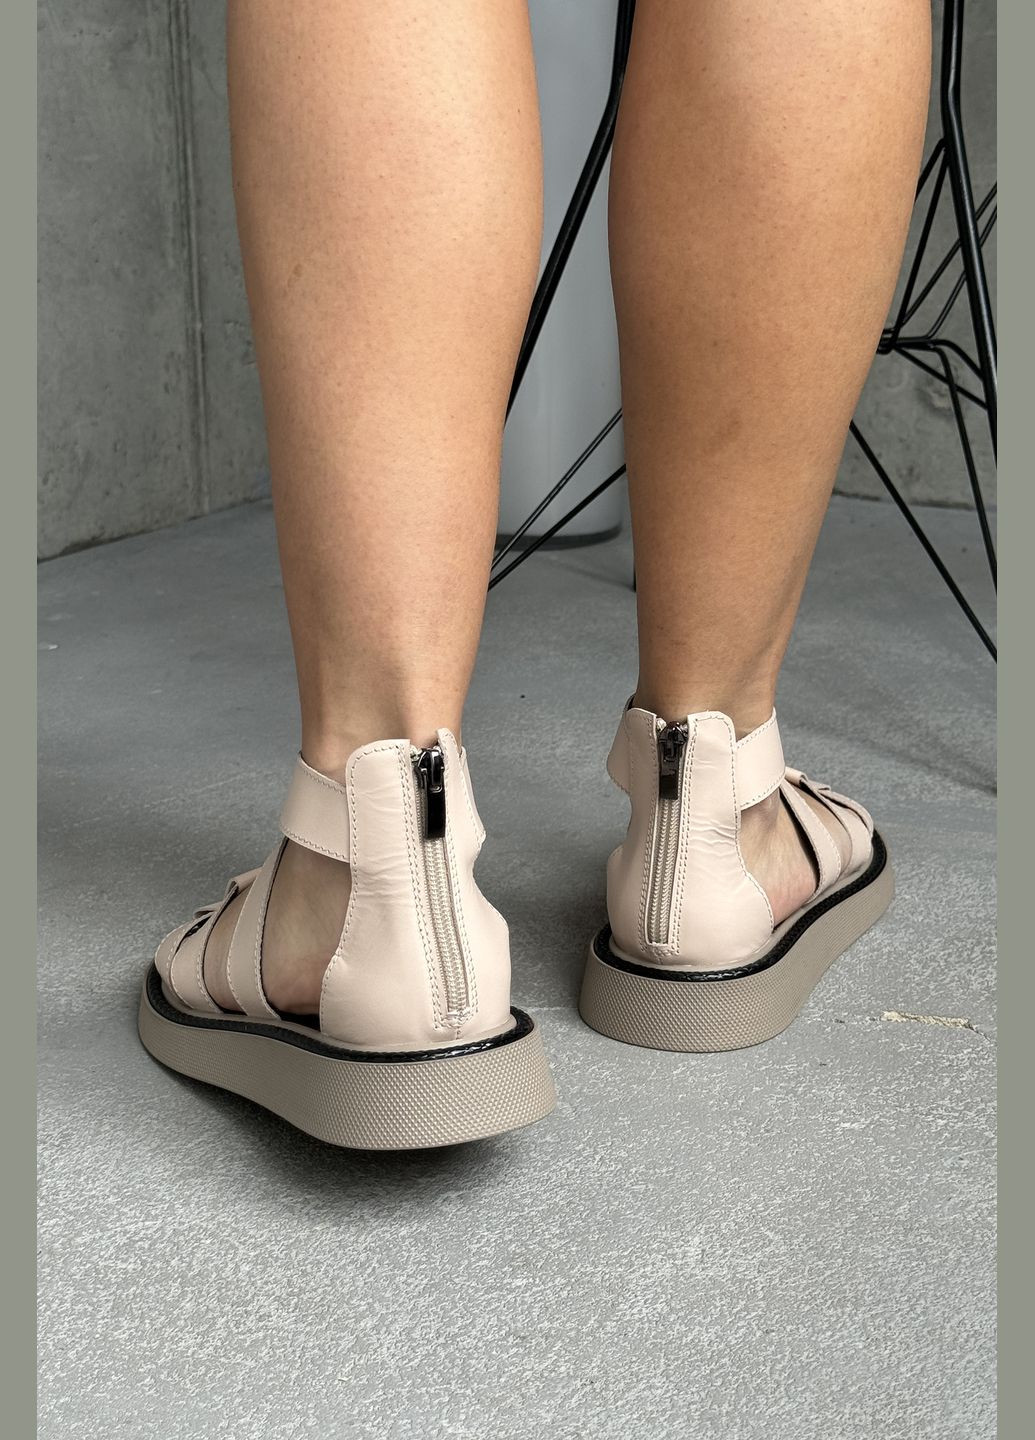 Бежевые комфортные и стильные женские сандалии босоножки с закрытой пяткой InFashion на молнии